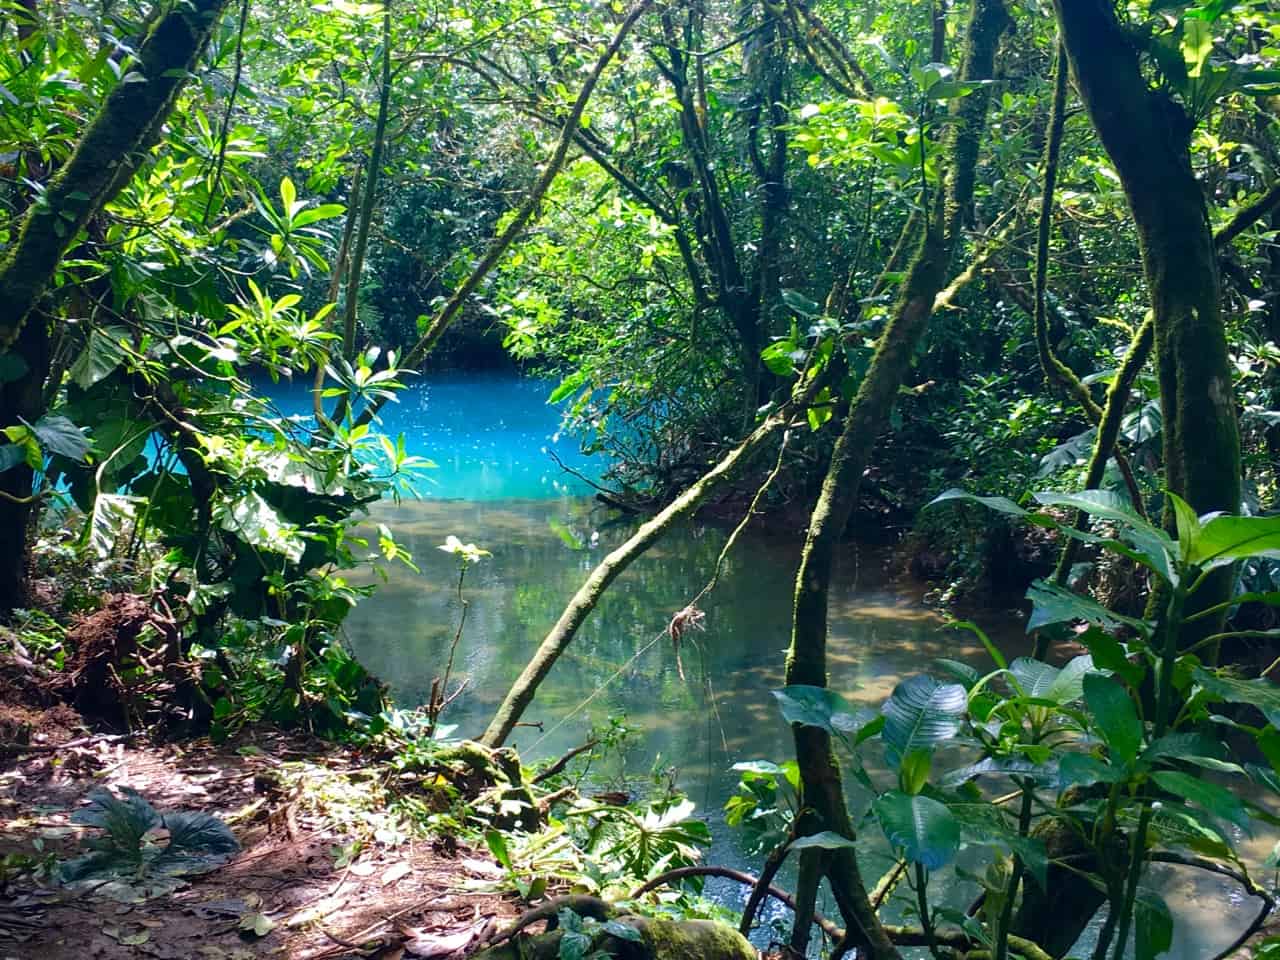 Los Teñidores in Costa Rica, dove due fiumi d'acqua limpida si incontrano e uno diventa blu.